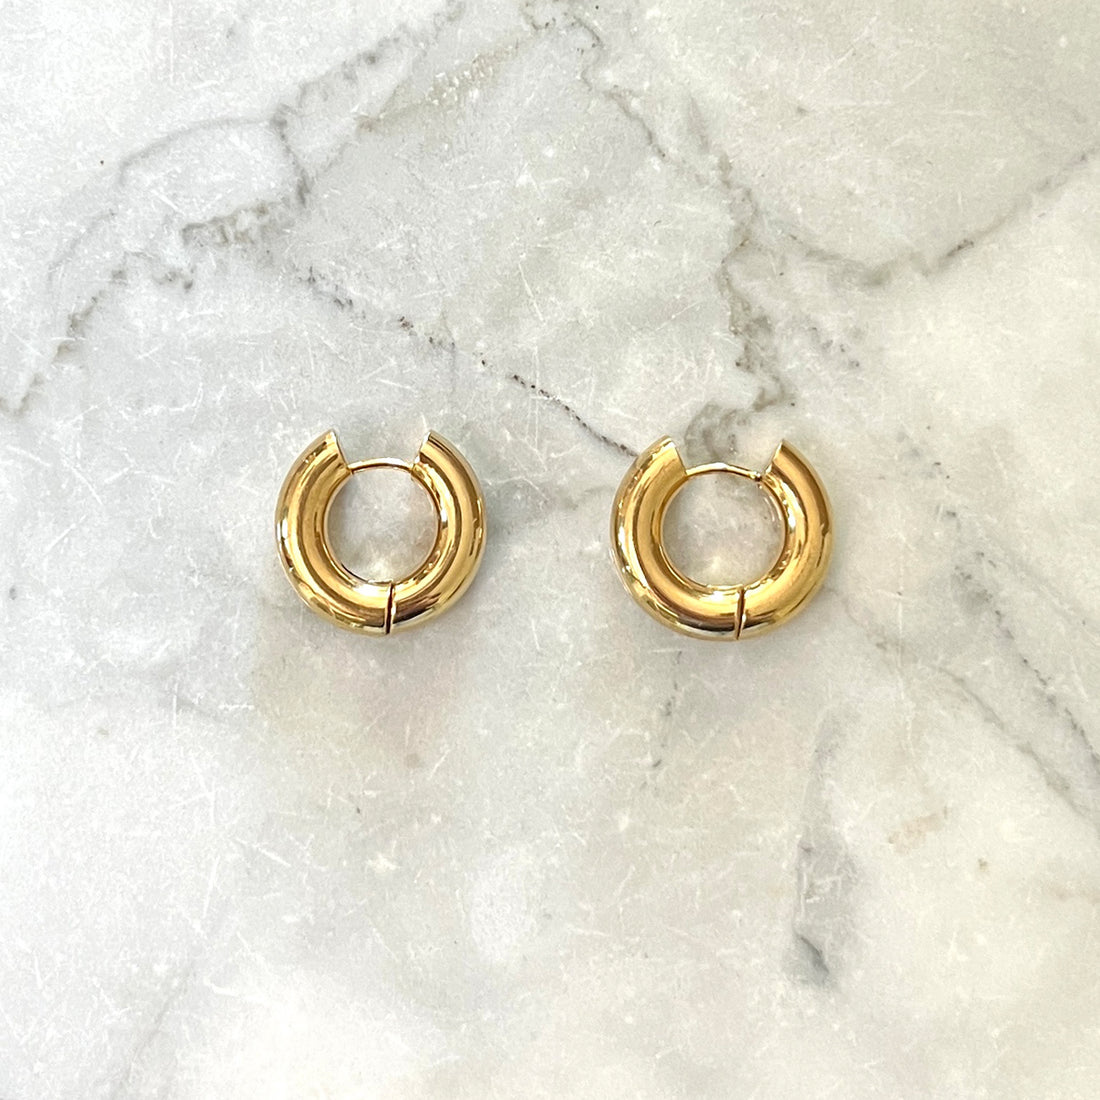 Brede oorbel ringen 5 mm goud. Gouden brede oorbel ringen met een klik sluiting. De oorbellen zijn van gold plated roestvrij staal materiaal en zijn waterproof. 